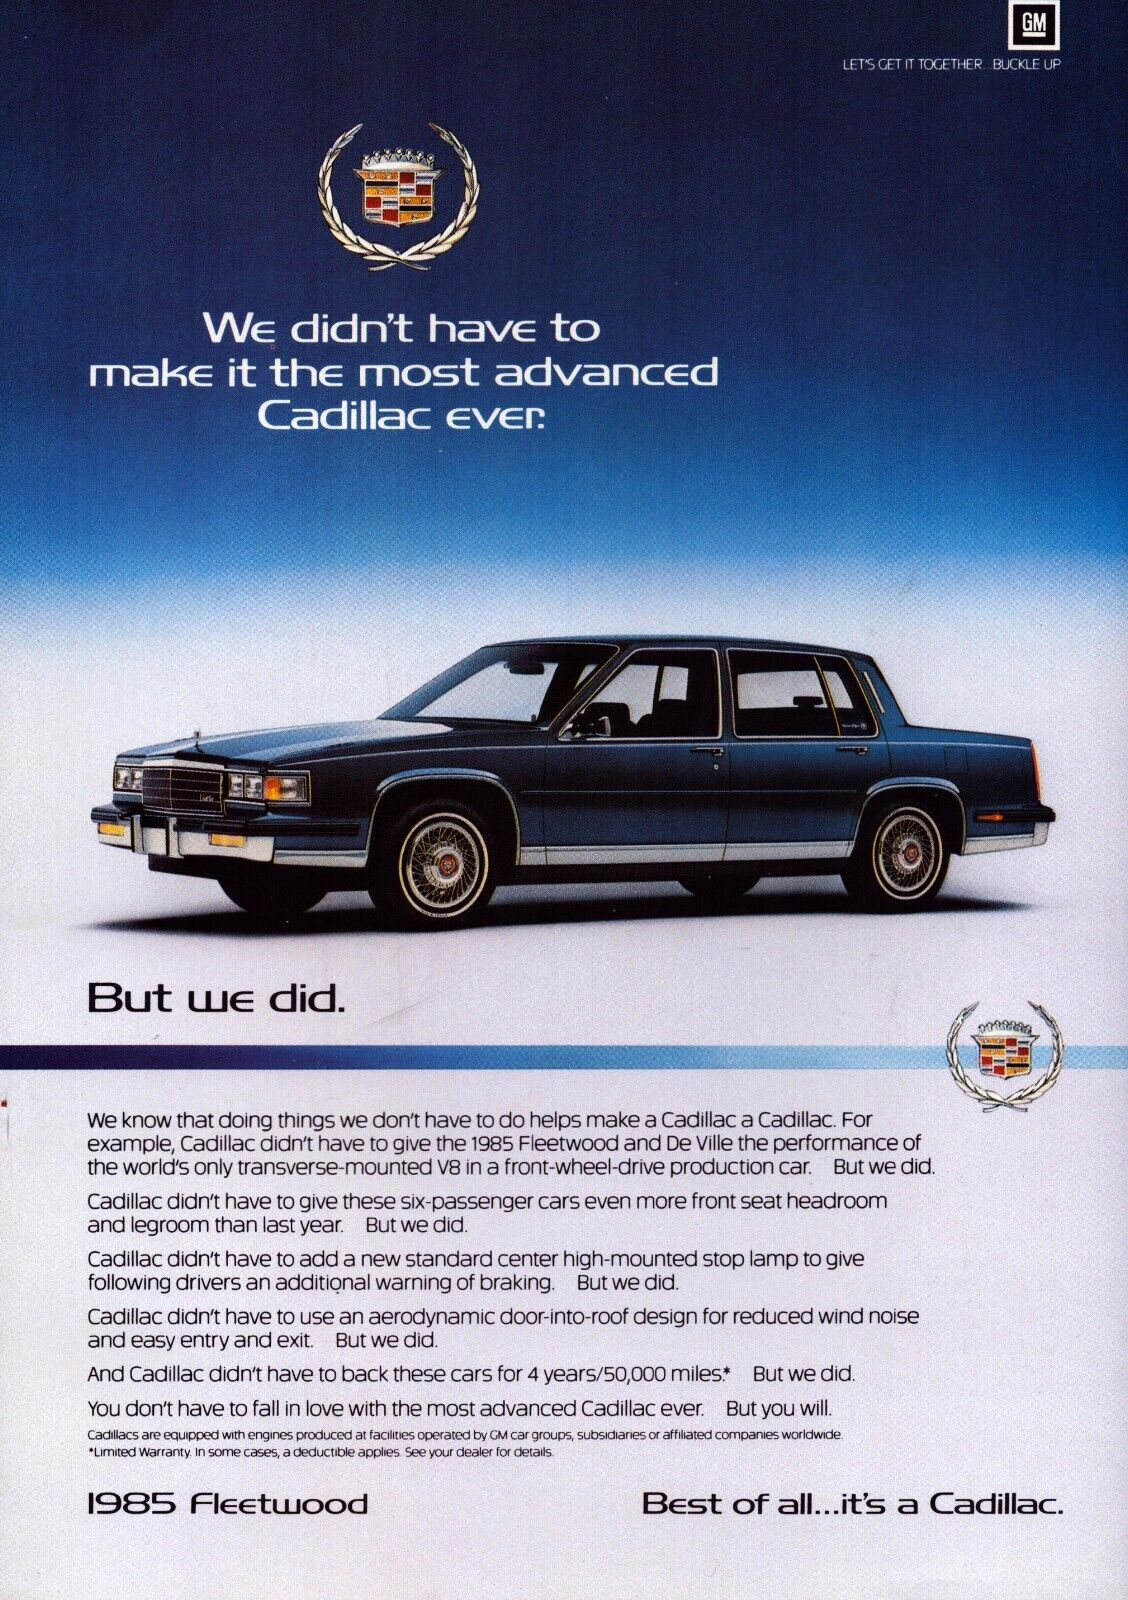 Cadillac 1985 Fleetwood Blue Car Most Advanced Ever Vintage Print Ad 1984